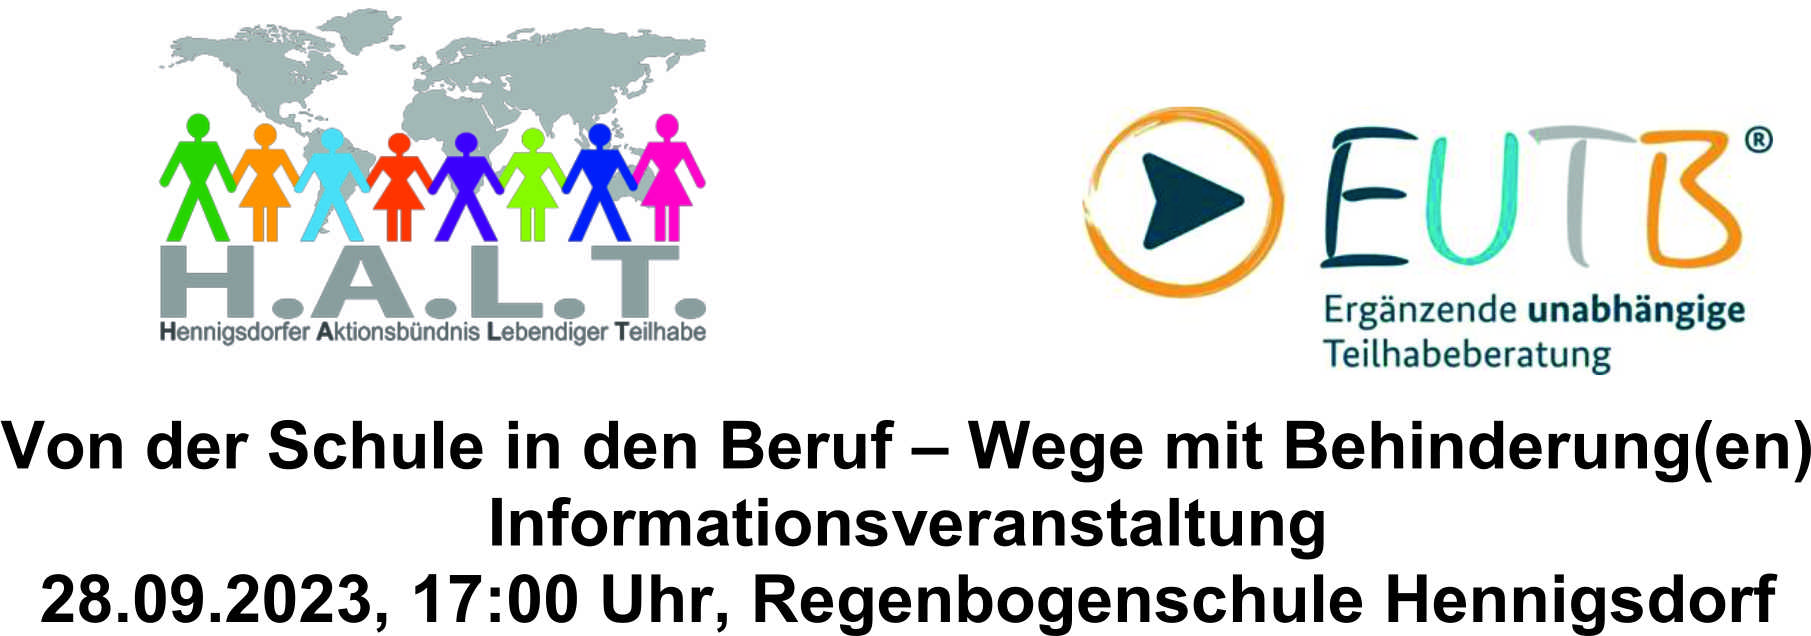 Informationsveranstaltung am 28.09.2023 um 17 Uhr in der Regenbogenschule Hennigsdorf: Von der Schule in den Beruf - Wege mit Behinderung(en)